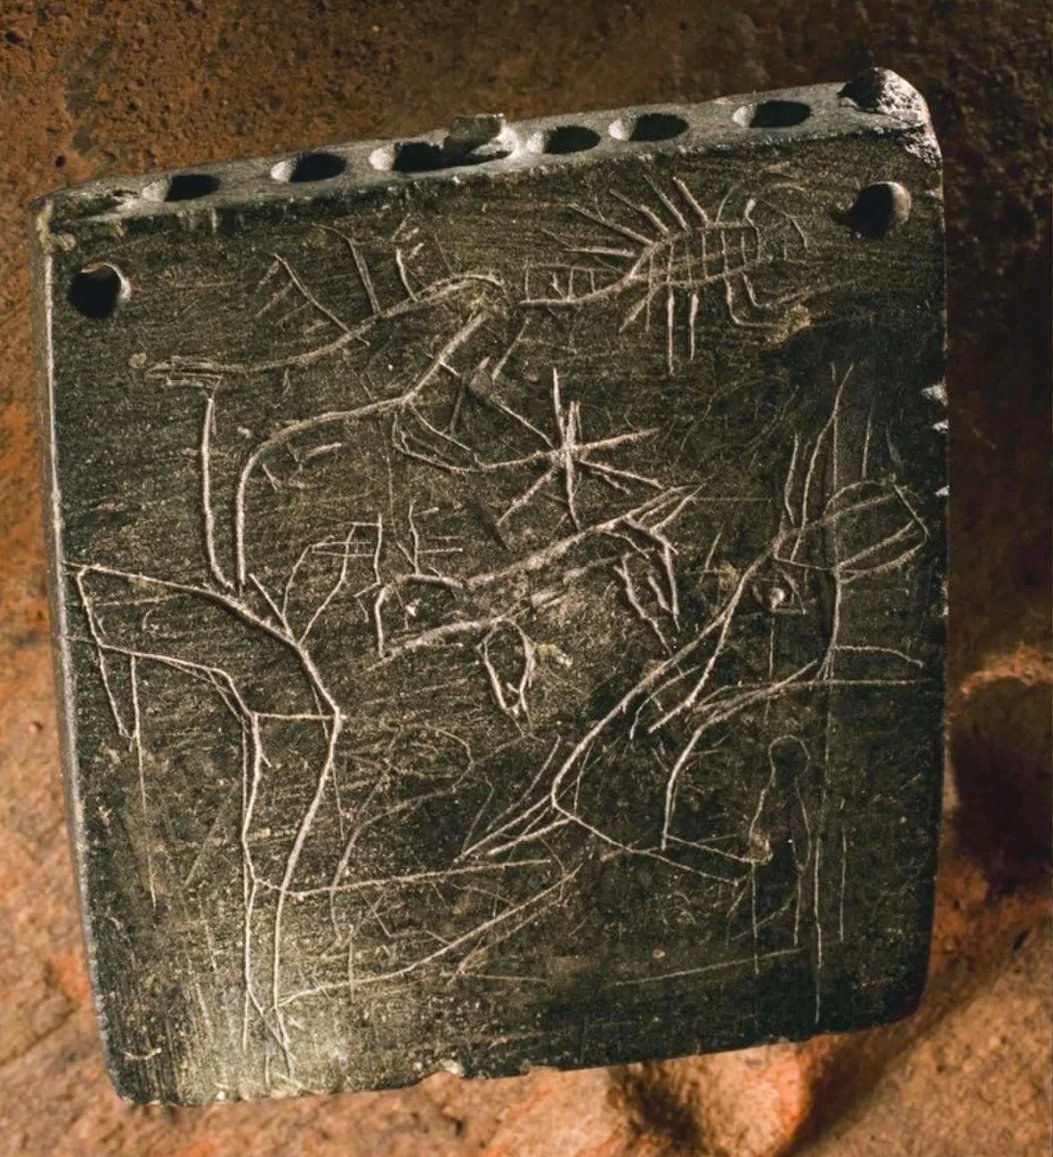 طلسم باستانی تصاویری از حیواناتی مانند عقرب در جلو و پشت داشت (در اینجا نشان داده شده است). تجزیه و تحلیل نوشته های این طلسم نشان می دهد که بین سال های 850 قبل از میلاد تا 800 قبل از میلاد کتیبه نگاشته شده است و این باعث می شود کتیبه قدیمی ترین طلسم آرامی باشد که تا کنون یافت شده است. © عکس توسط روبرتو سکاچی/ با اجازه اکسپدیشن شیکاگو-توبینگن به Zincirli